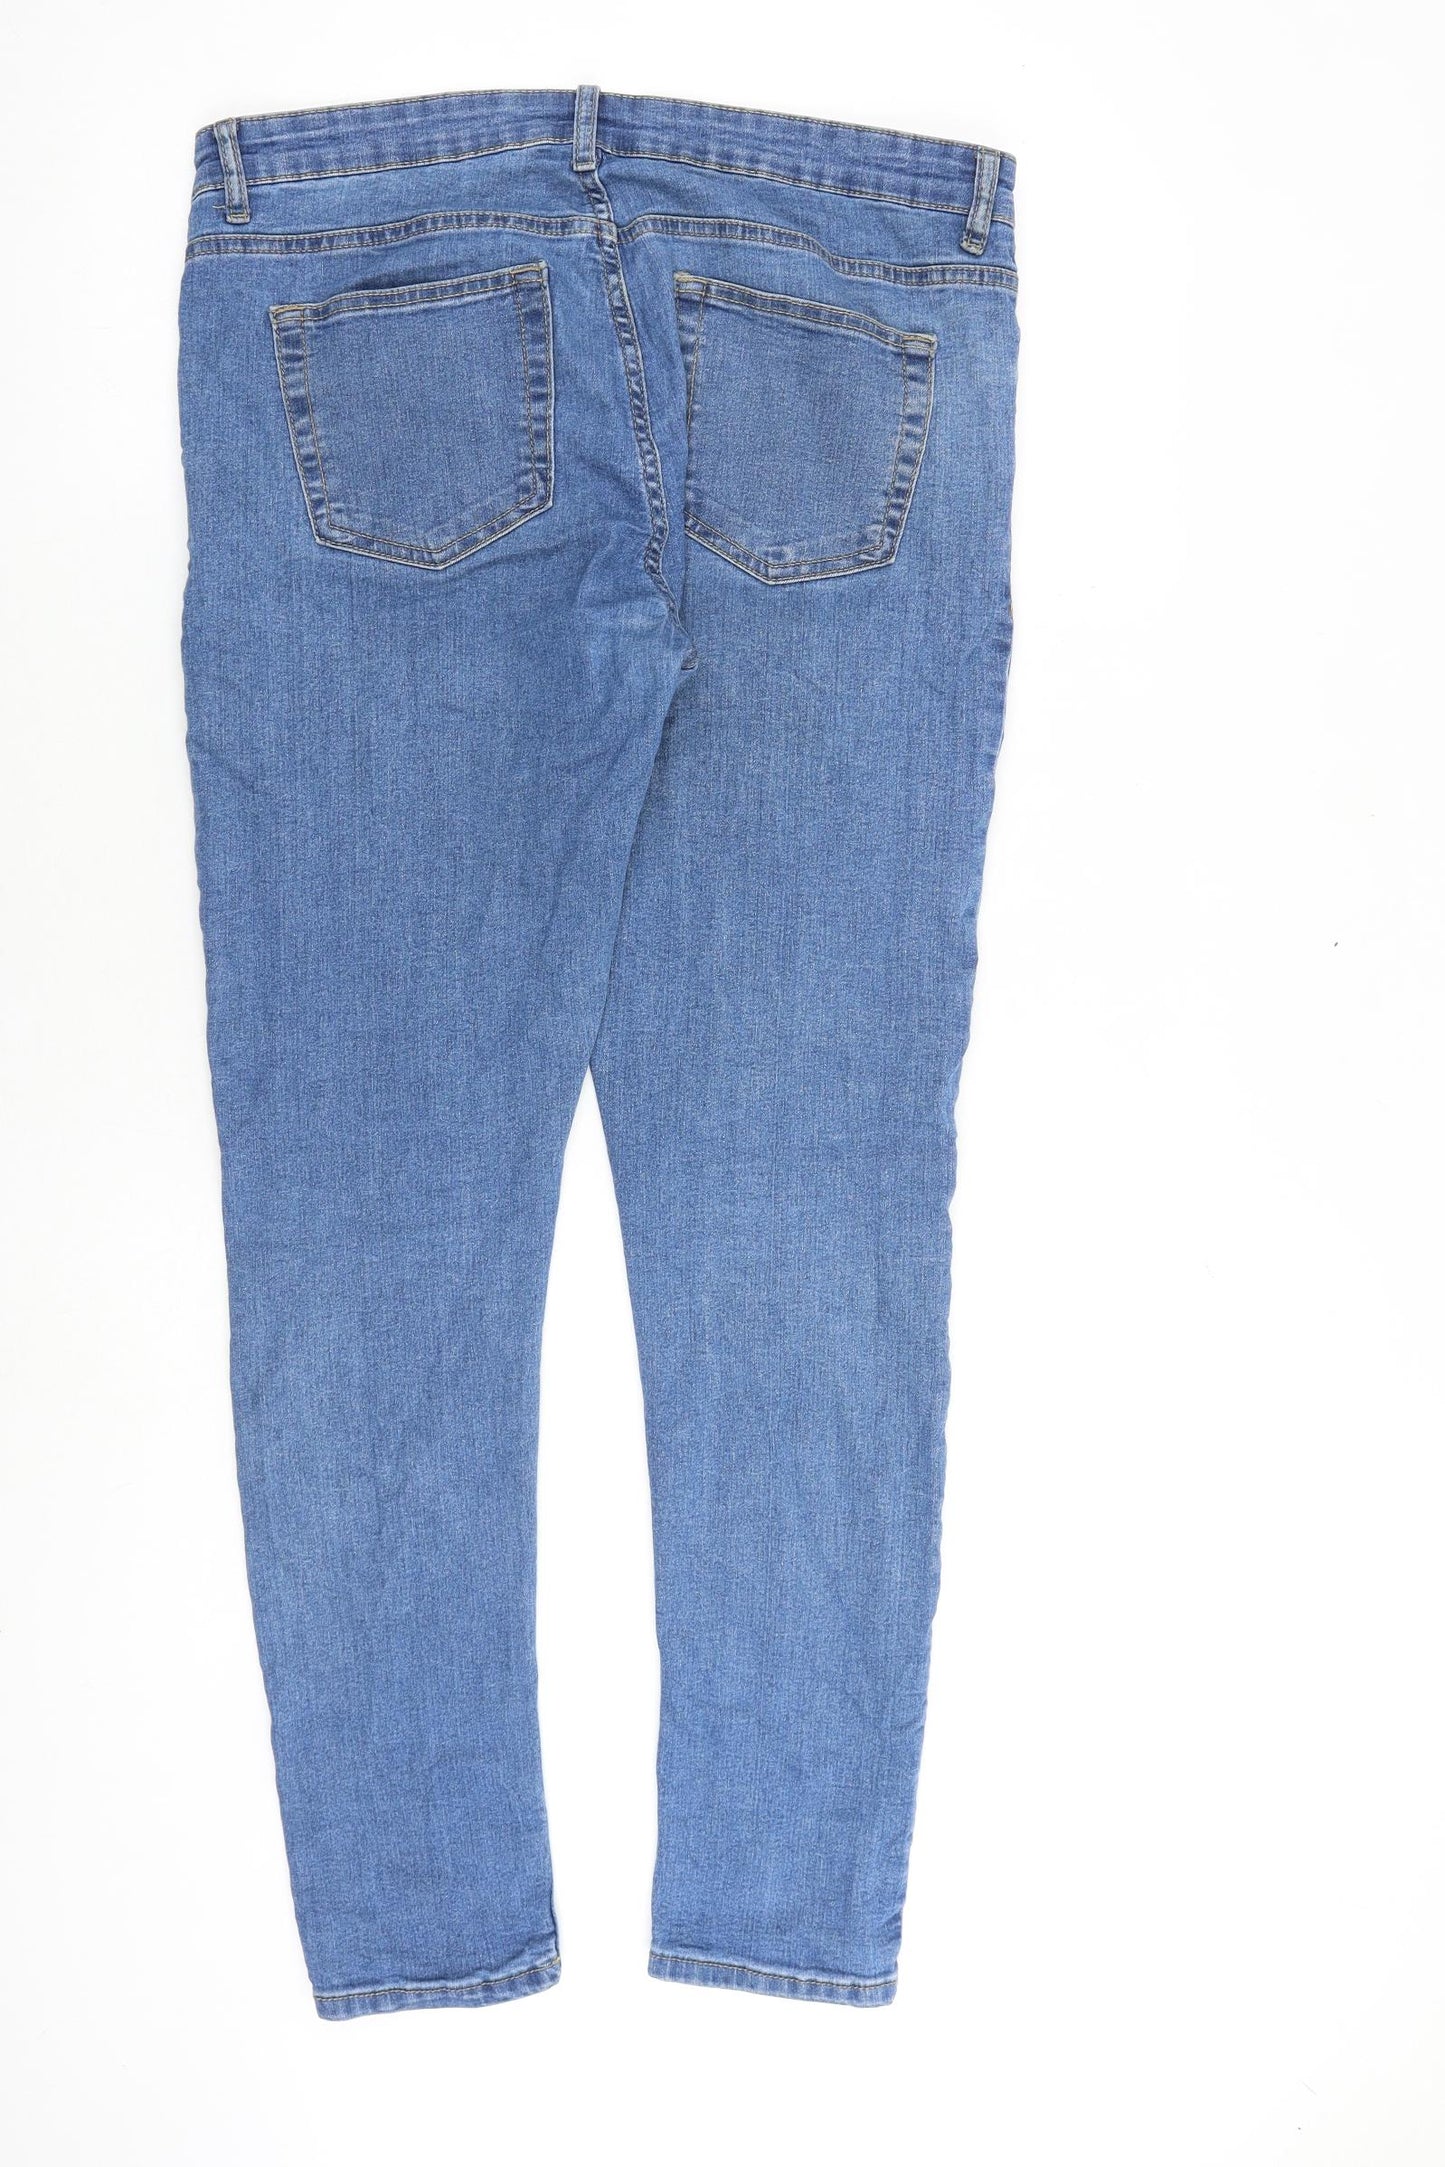 Denim & Co. Mens Blue Cotton Skinny Jeans Size 30 in L30 in Slim Zip